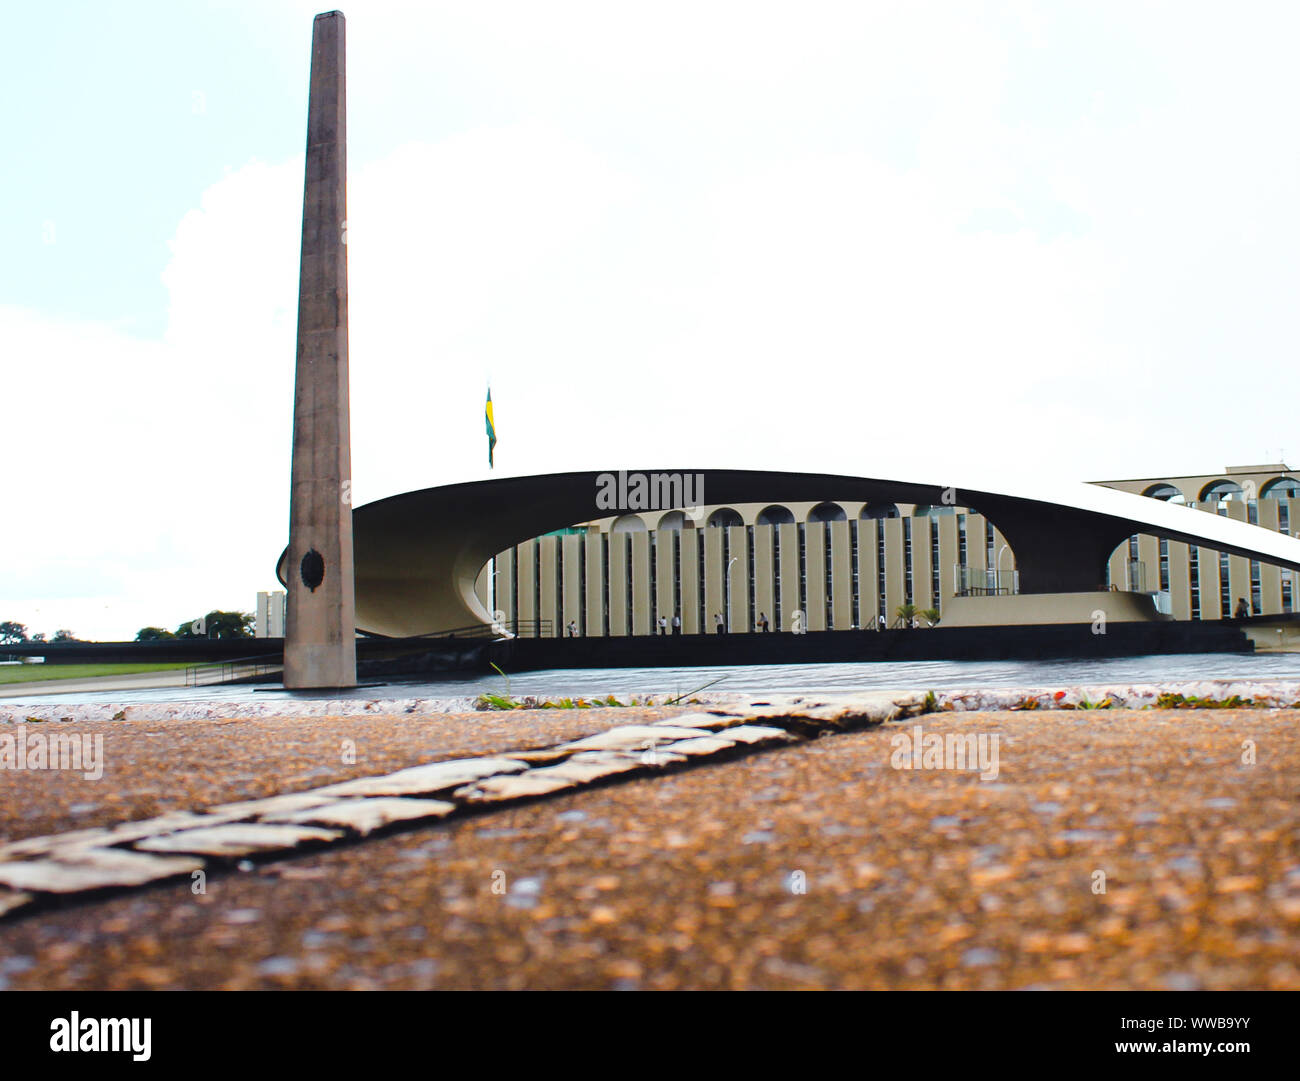 Fotografia della conchiglia acustica monumento che si trova nel Duca de caxias square nell'urbano settore militare in Brasilia. Foto Stock